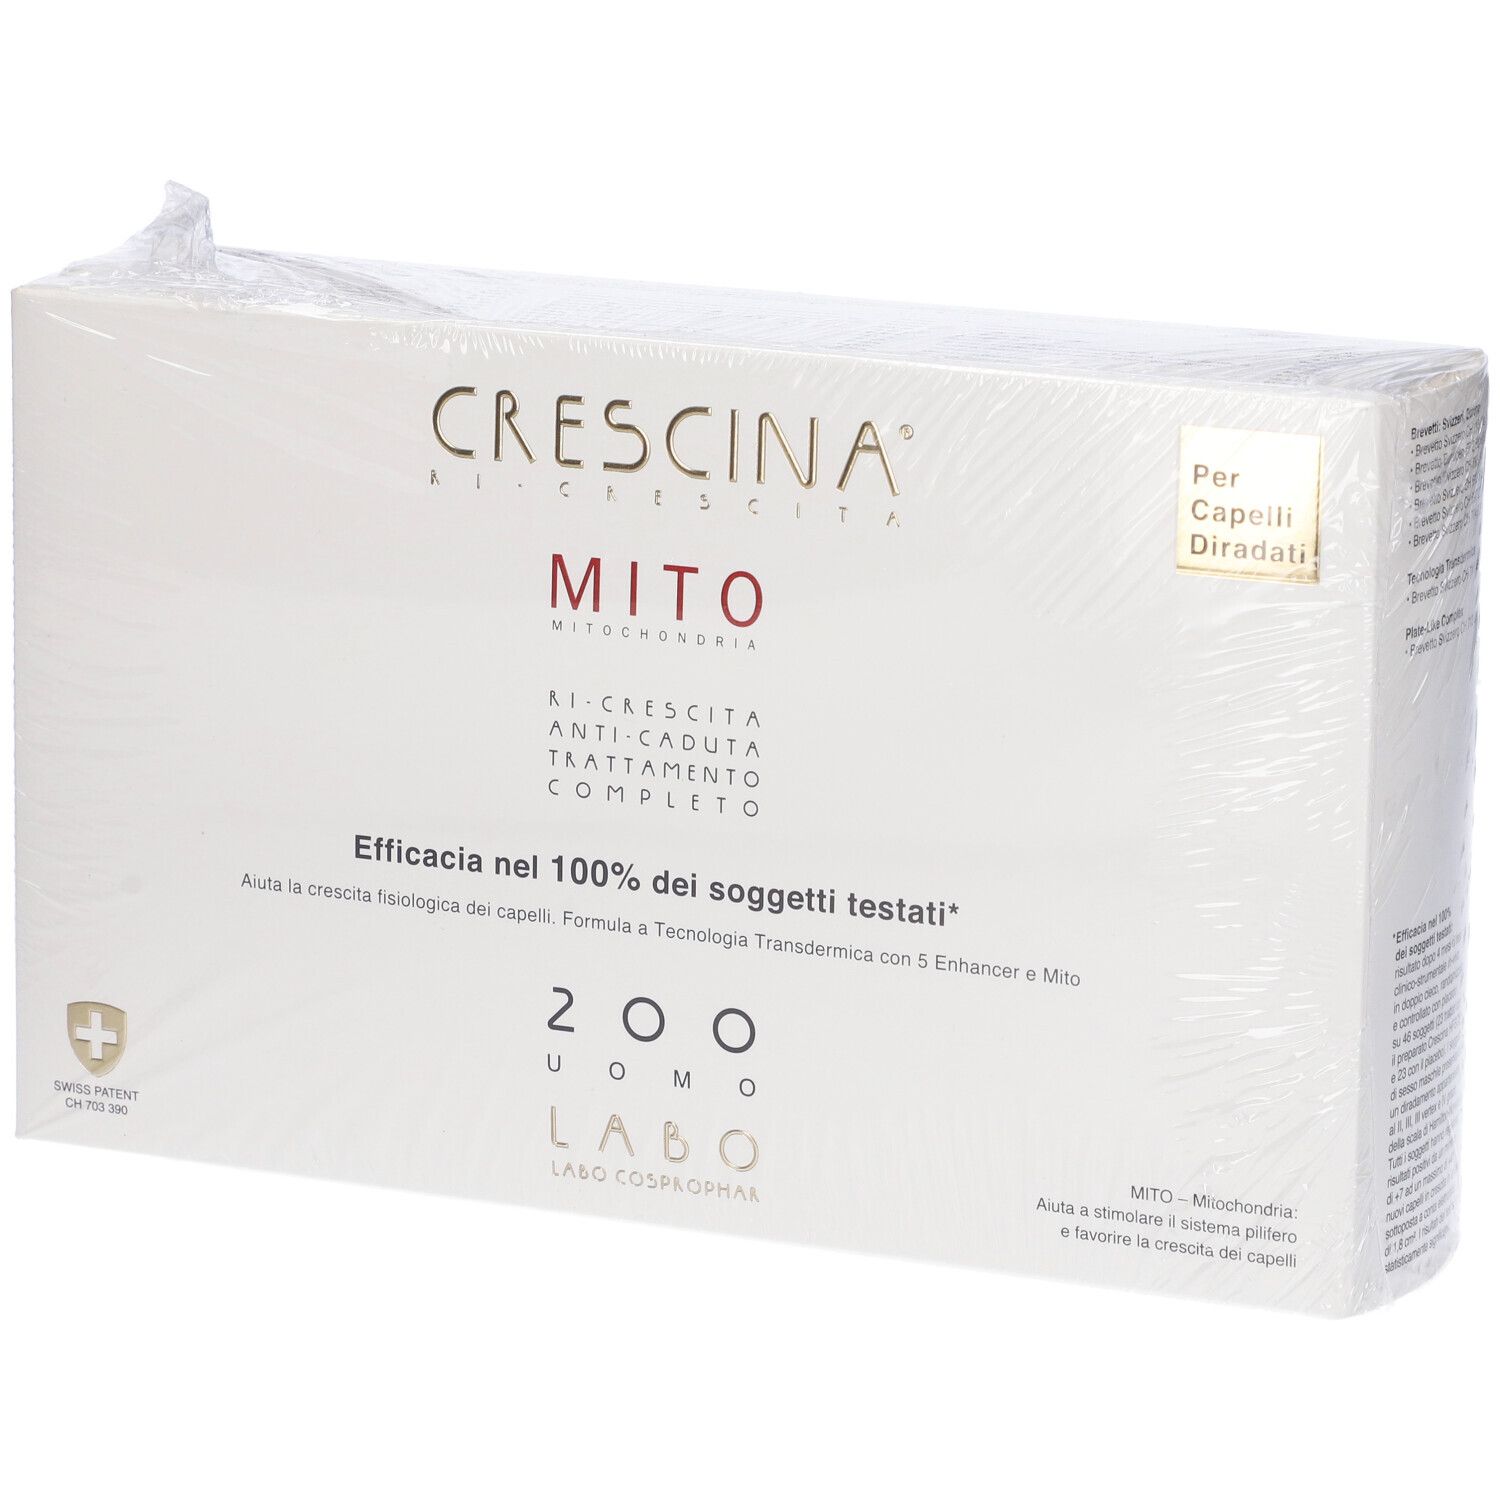 CRESCINA® Transdermic Ri-Crescita MITO + Anti-Caduta MITO Trattamento 200 Uomo 10 + 10 Fiale